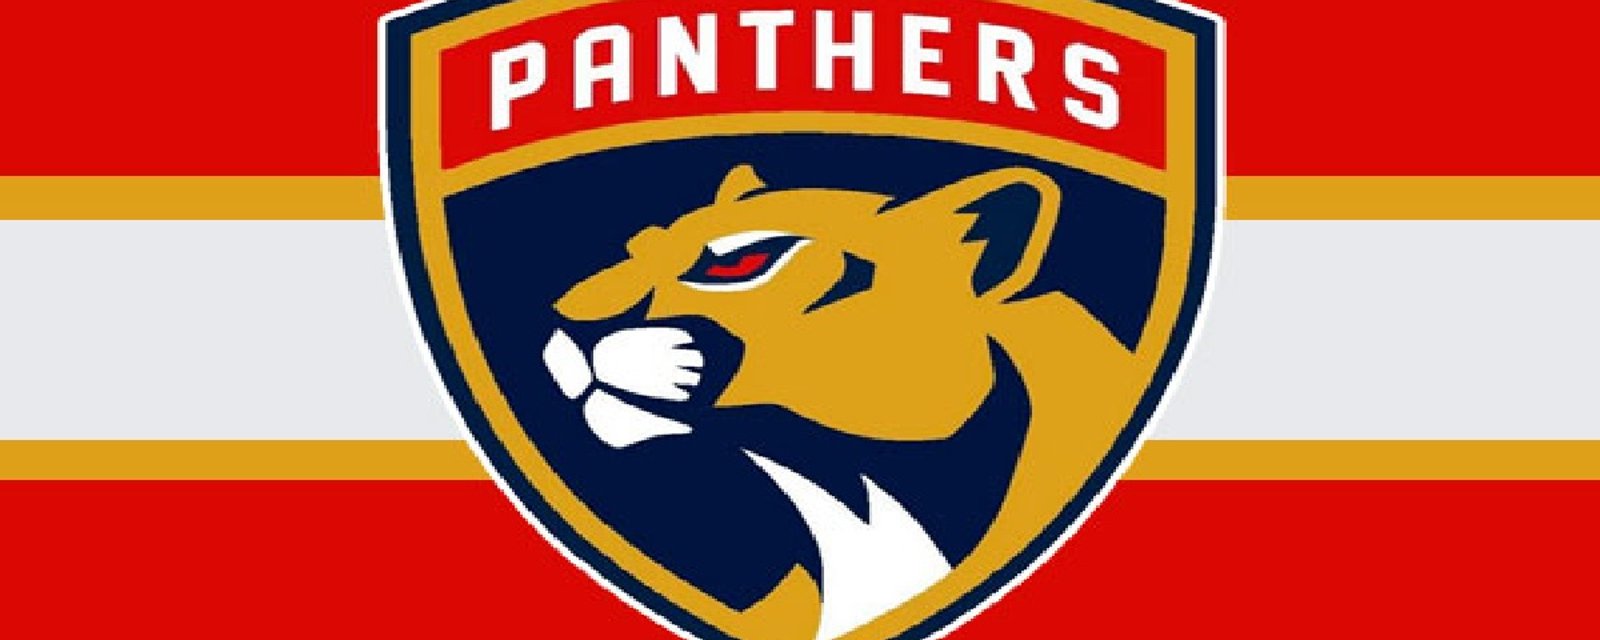 Un attaquant des Panthers quitte l'équipe en raison de problèmes personnels!